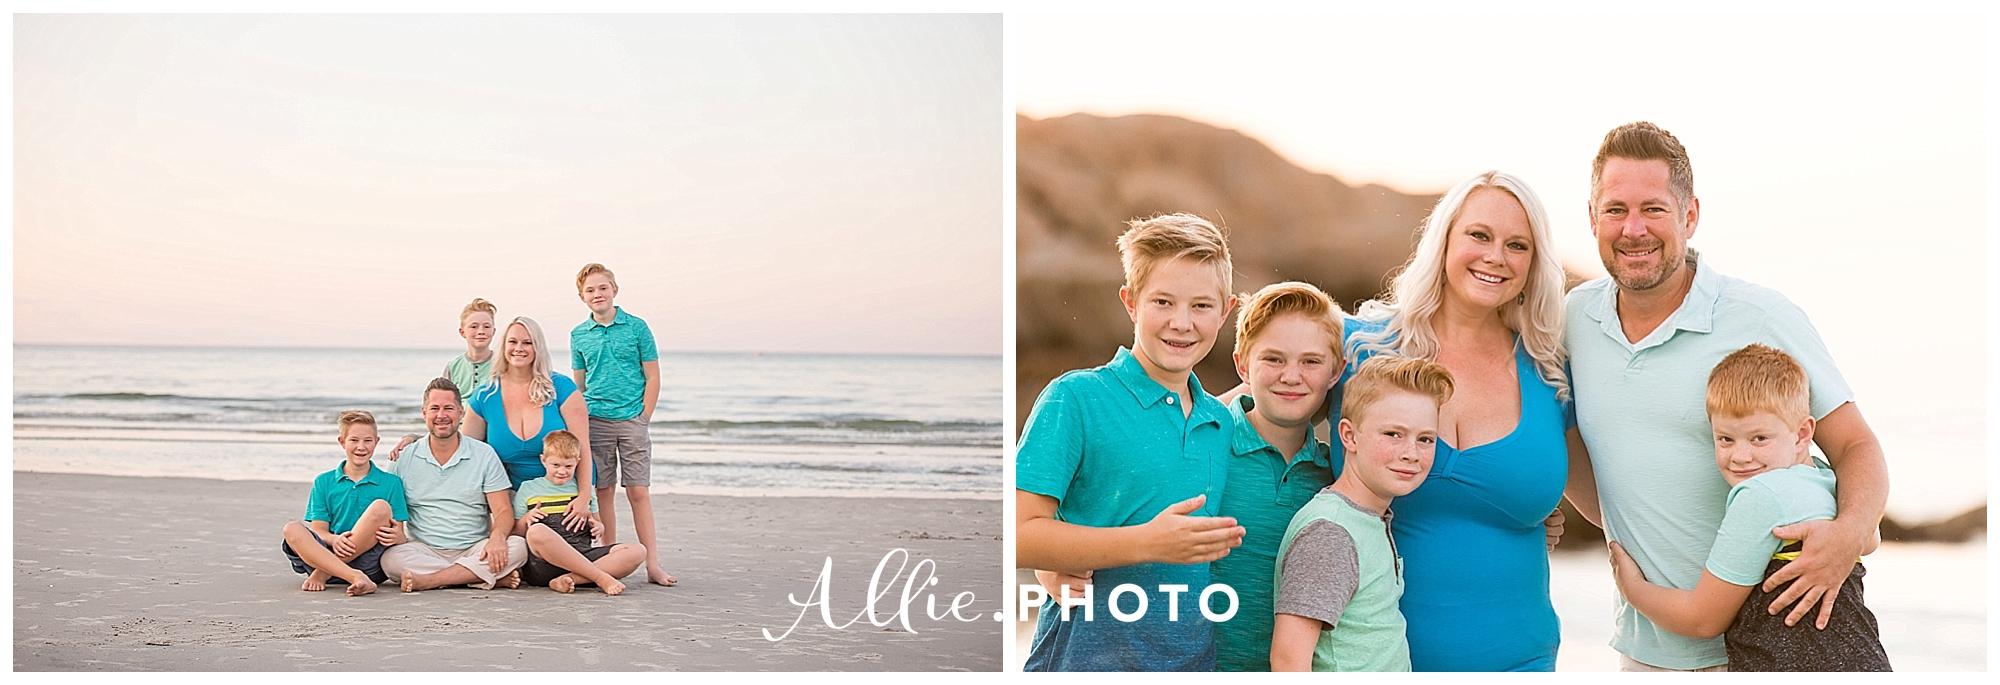 Massachusetts_photographer_beach_family_session_0005.jpg